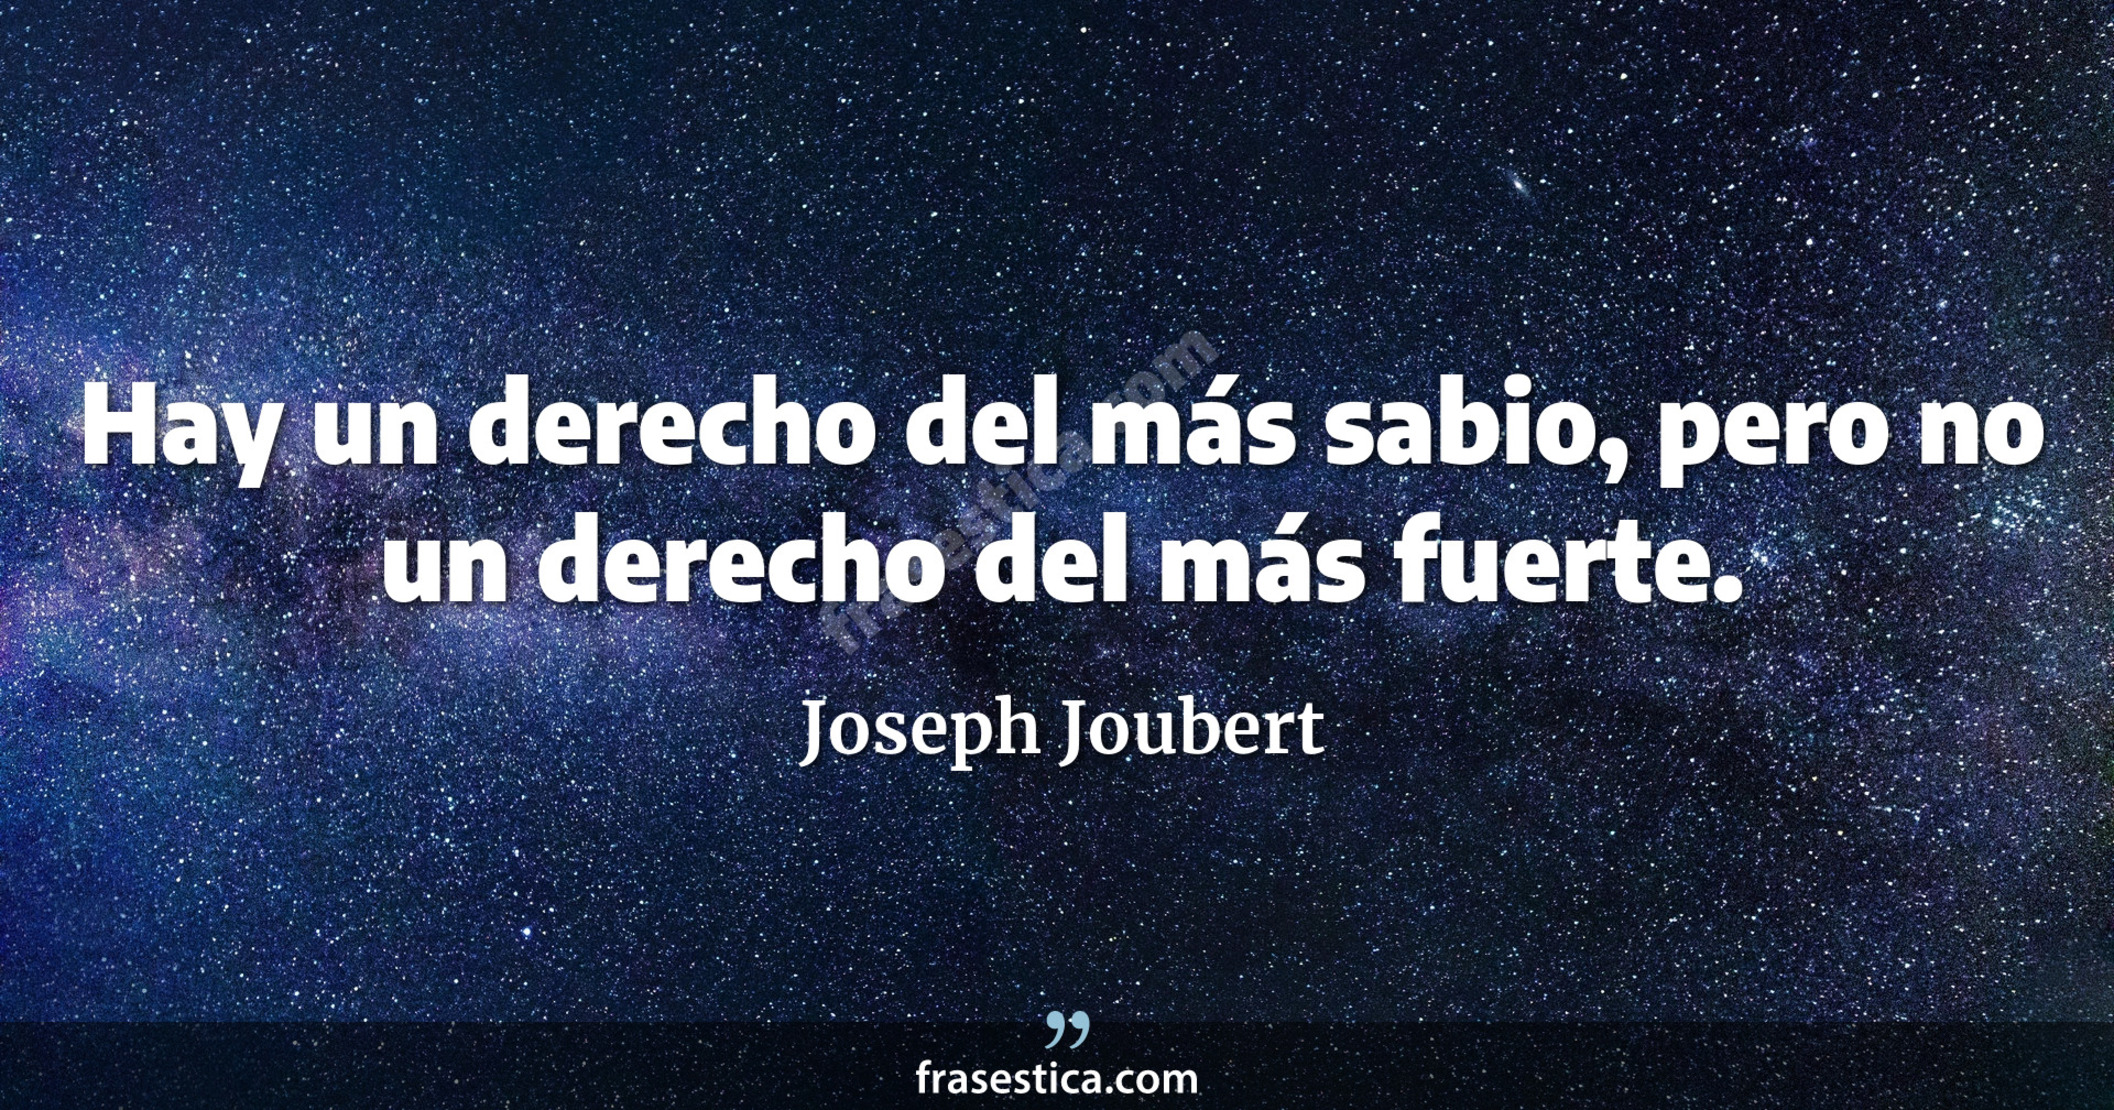 Hay un derecho del más sabio, pero no un derecho del más fuerte. - Joseph Joubert